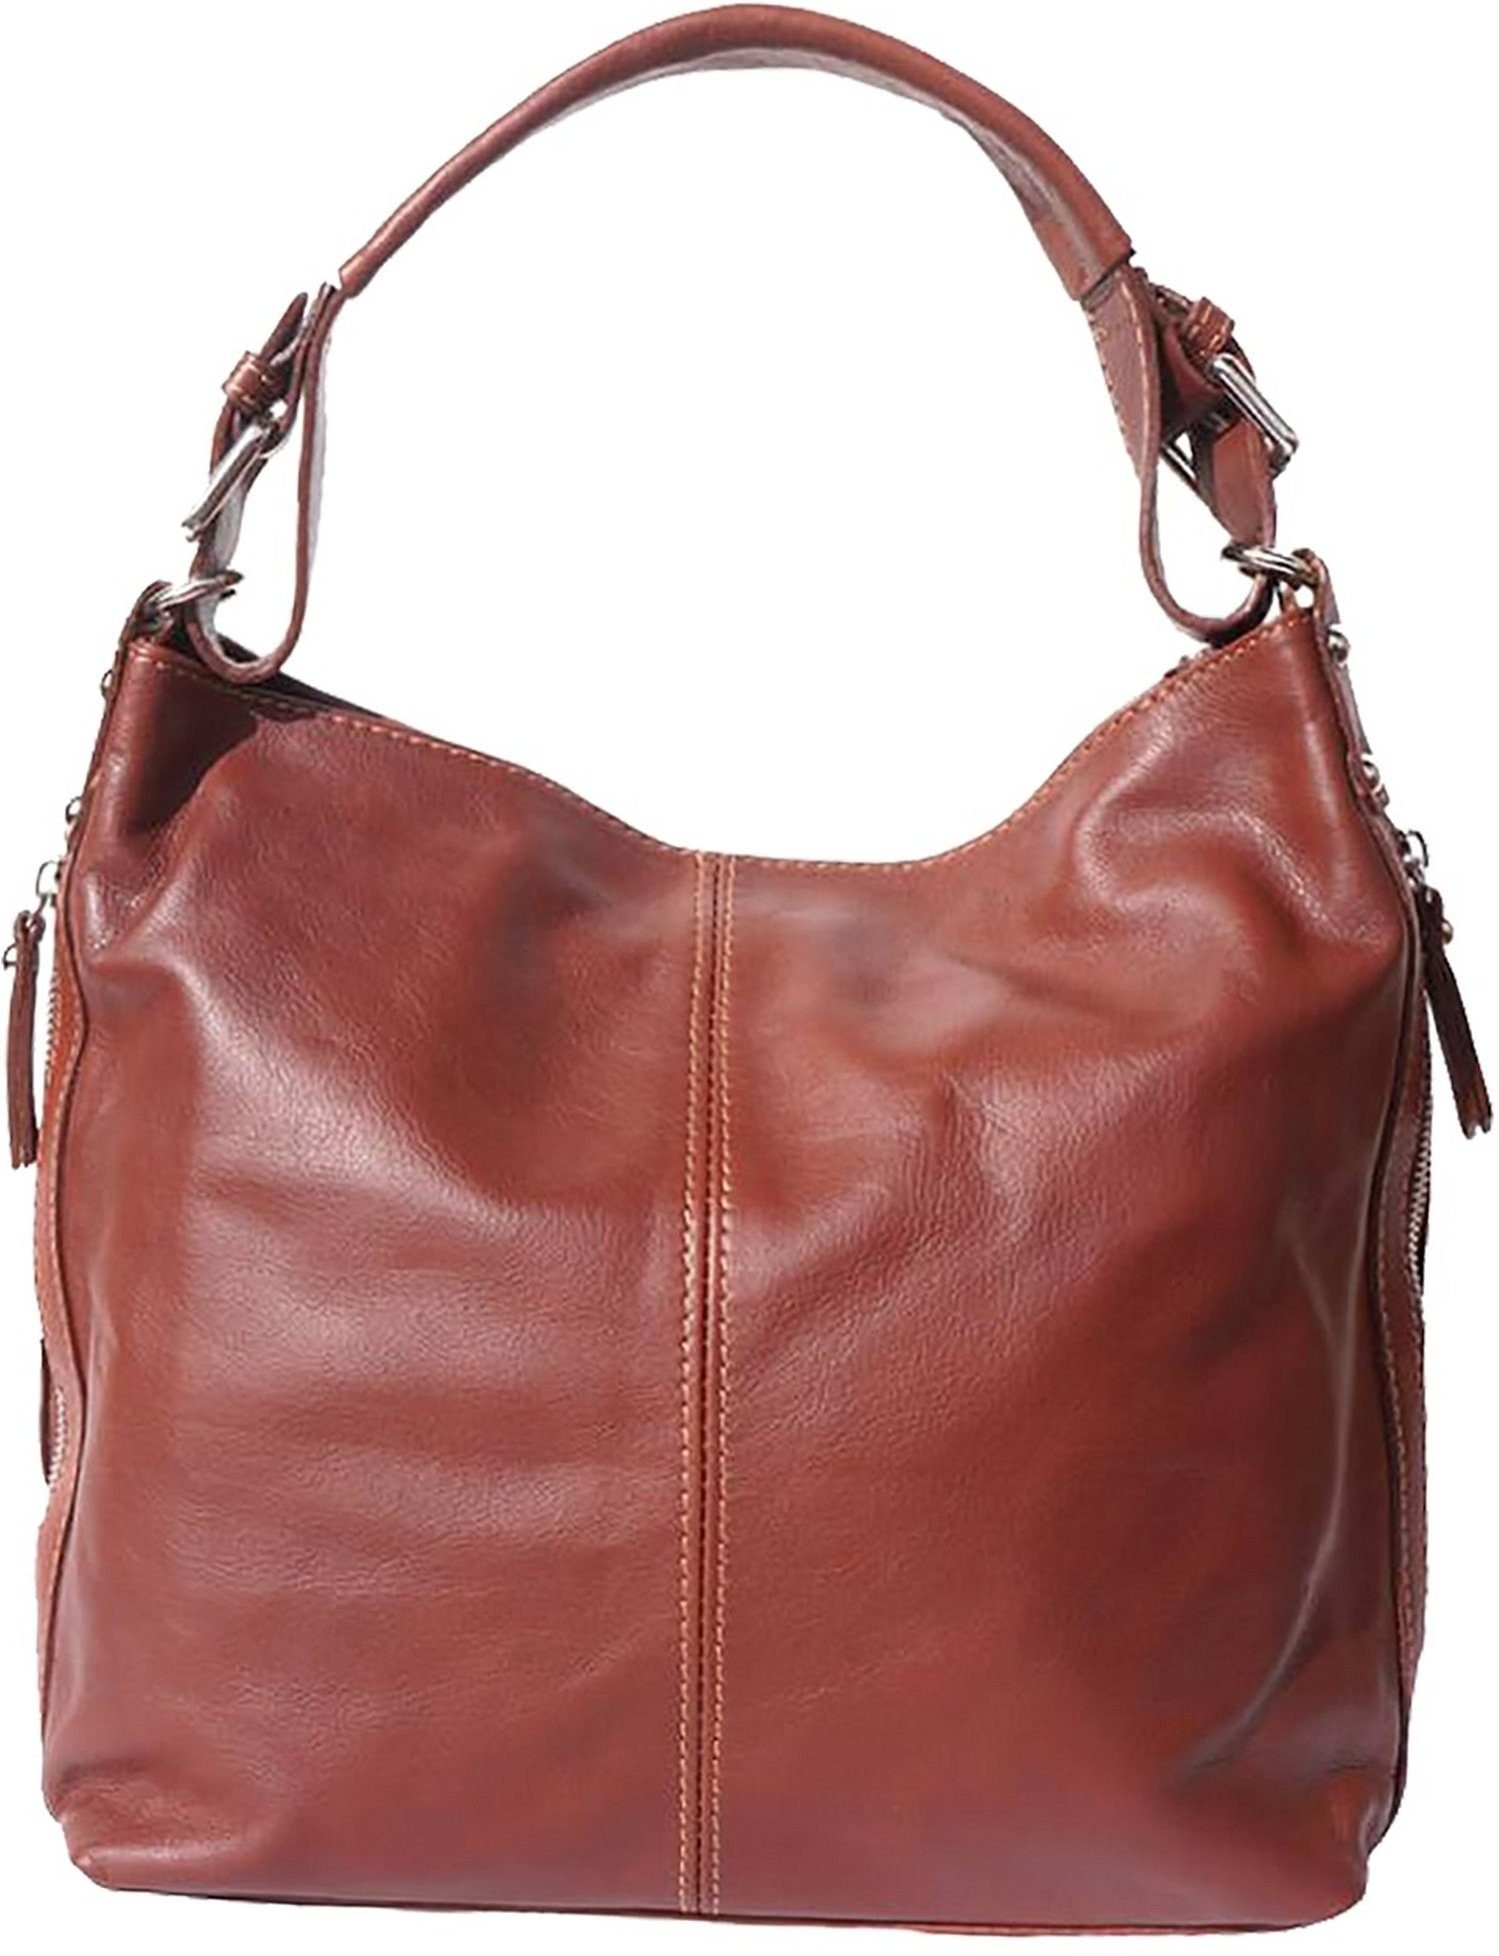 FLORENCE Shopper Florence Hobo Bag Echtleder Handtasche, Damen Tasche aus  Echtleder in braun, ca. 35cm Breite, Made-In Italy